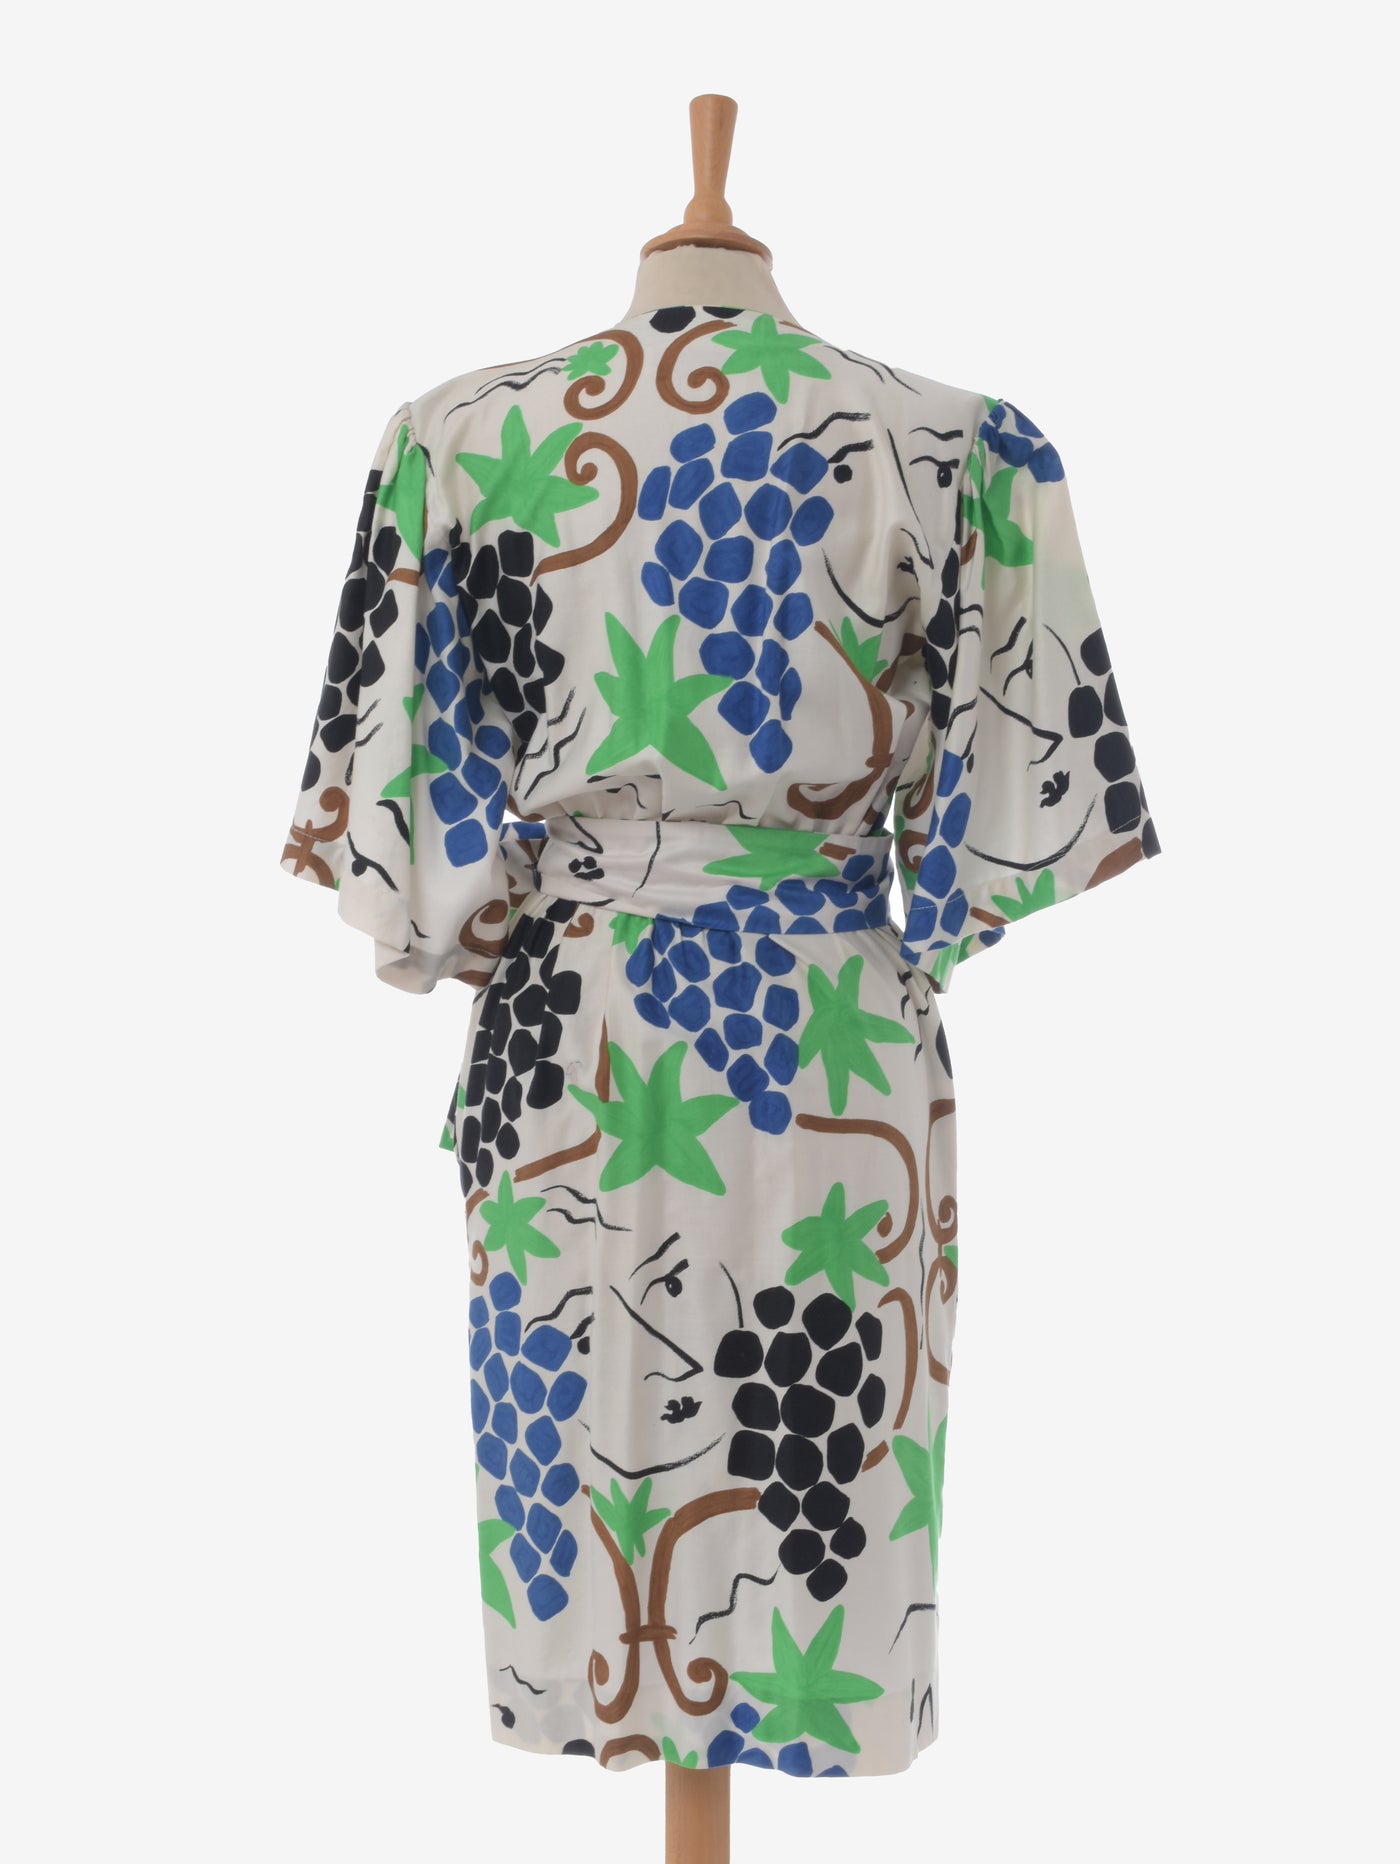 Yves Saint Laurent Patterned Wrap Dress - 80s